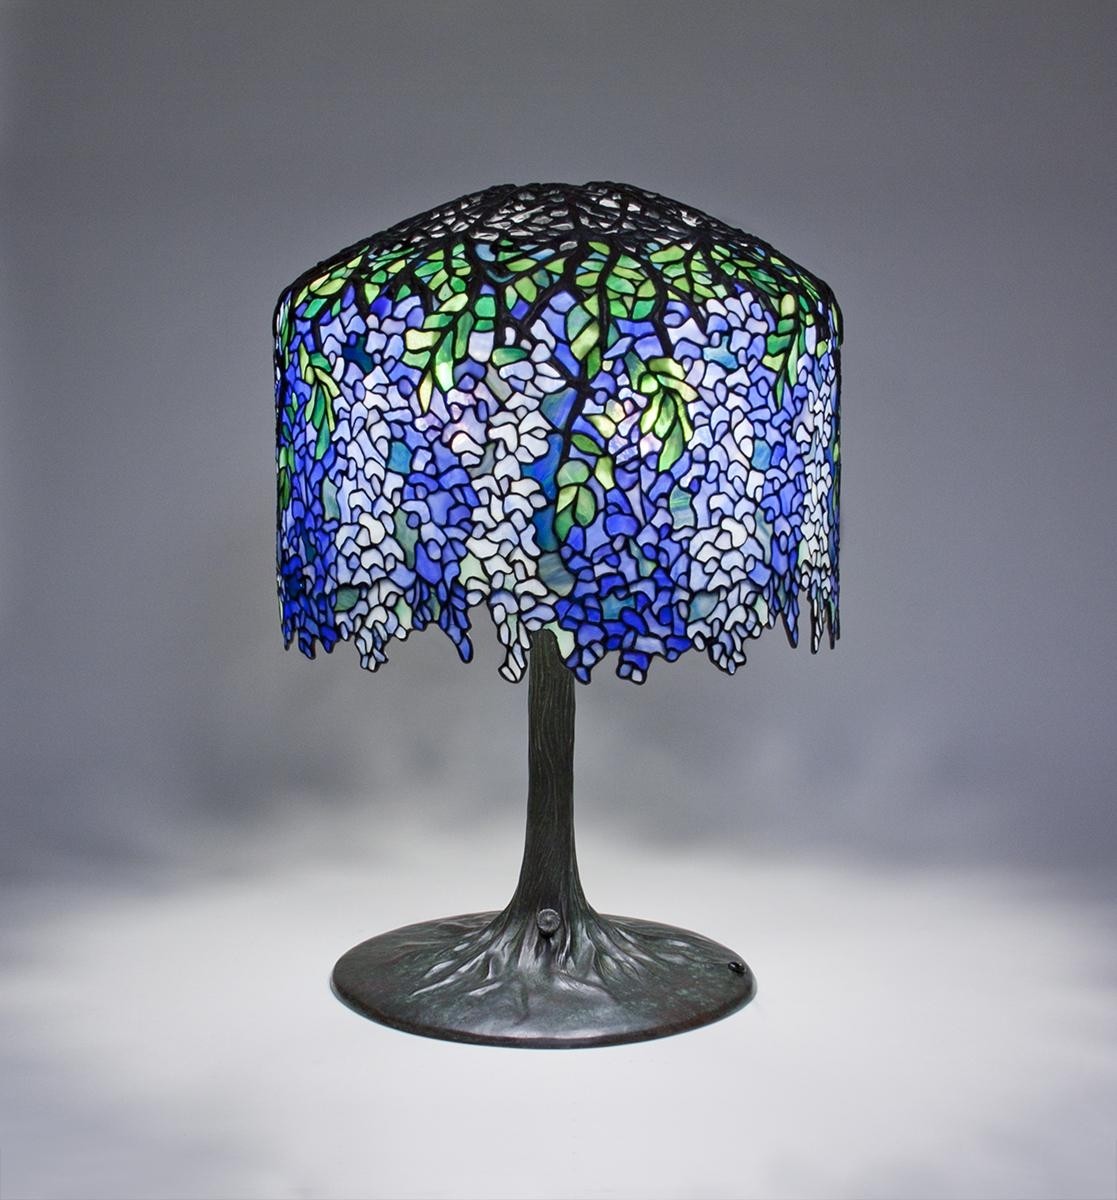 Tiffany studios wisteria table lamp tiffany studios